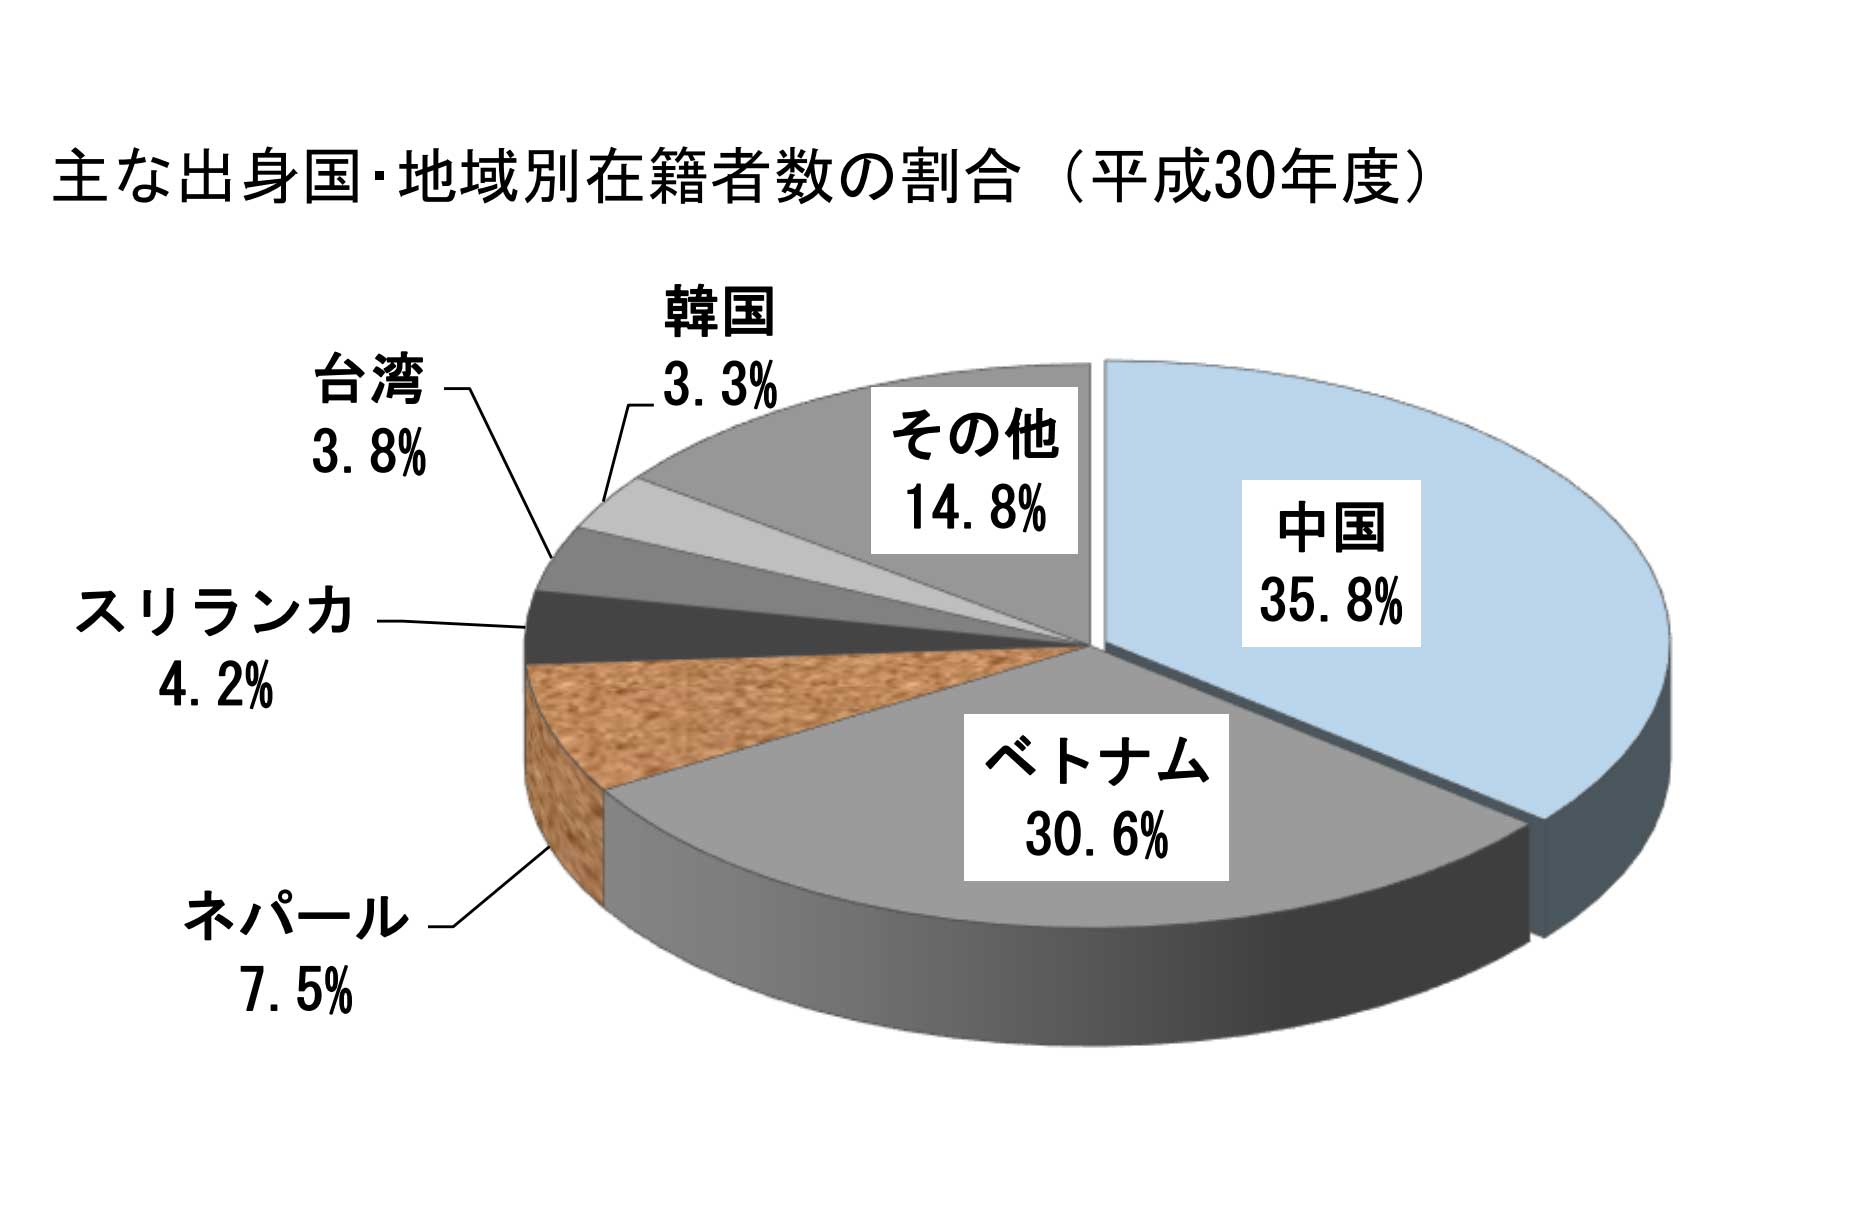 出典: 平成３０年度 日本語教育機関実態調査 結果報告 一般財団法人日本語教育振興協会